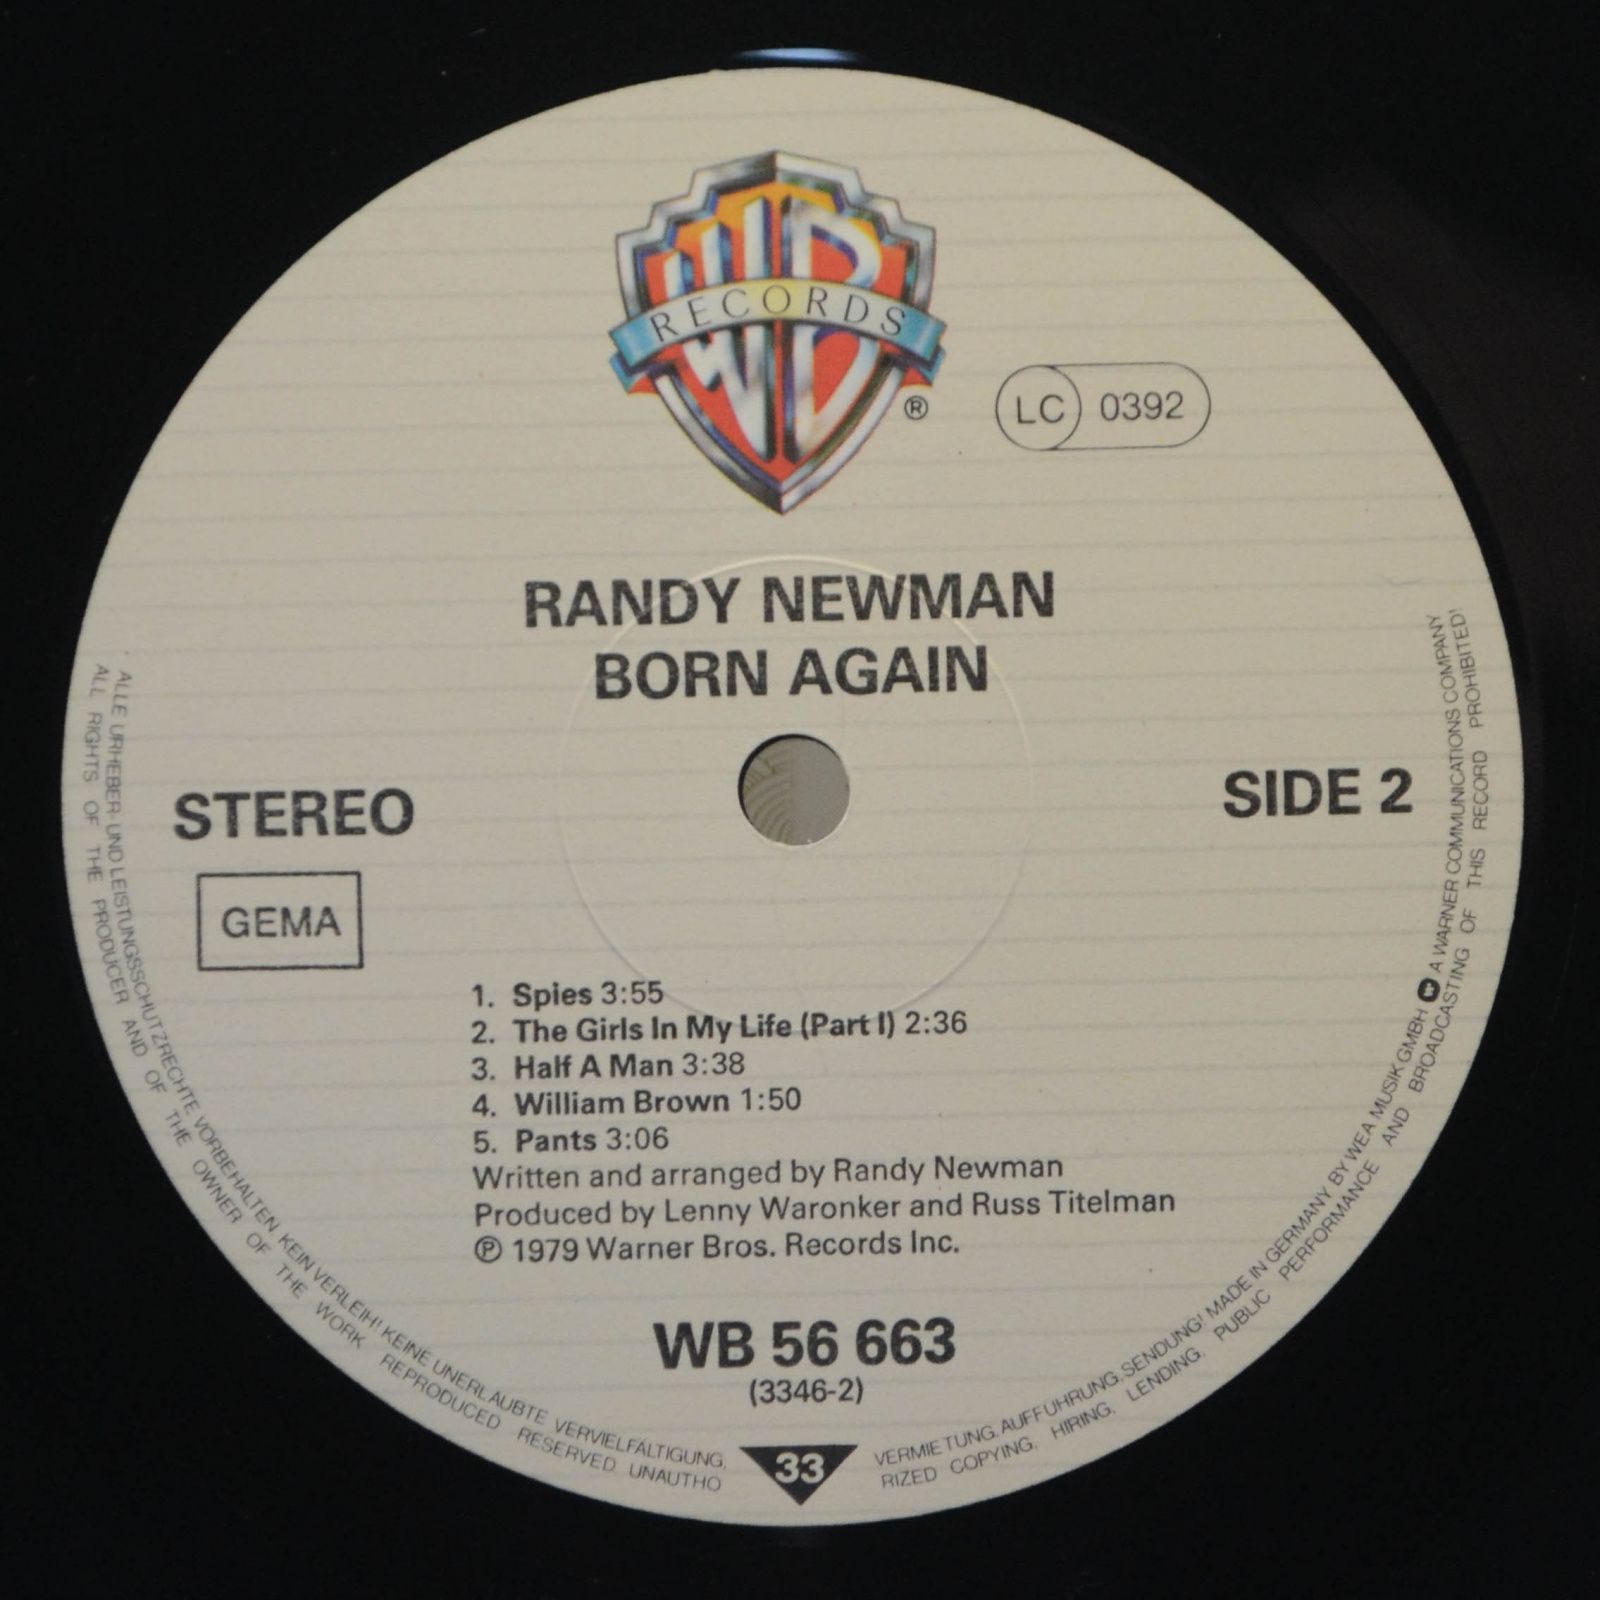 Randy Newman — Born Again, 1979